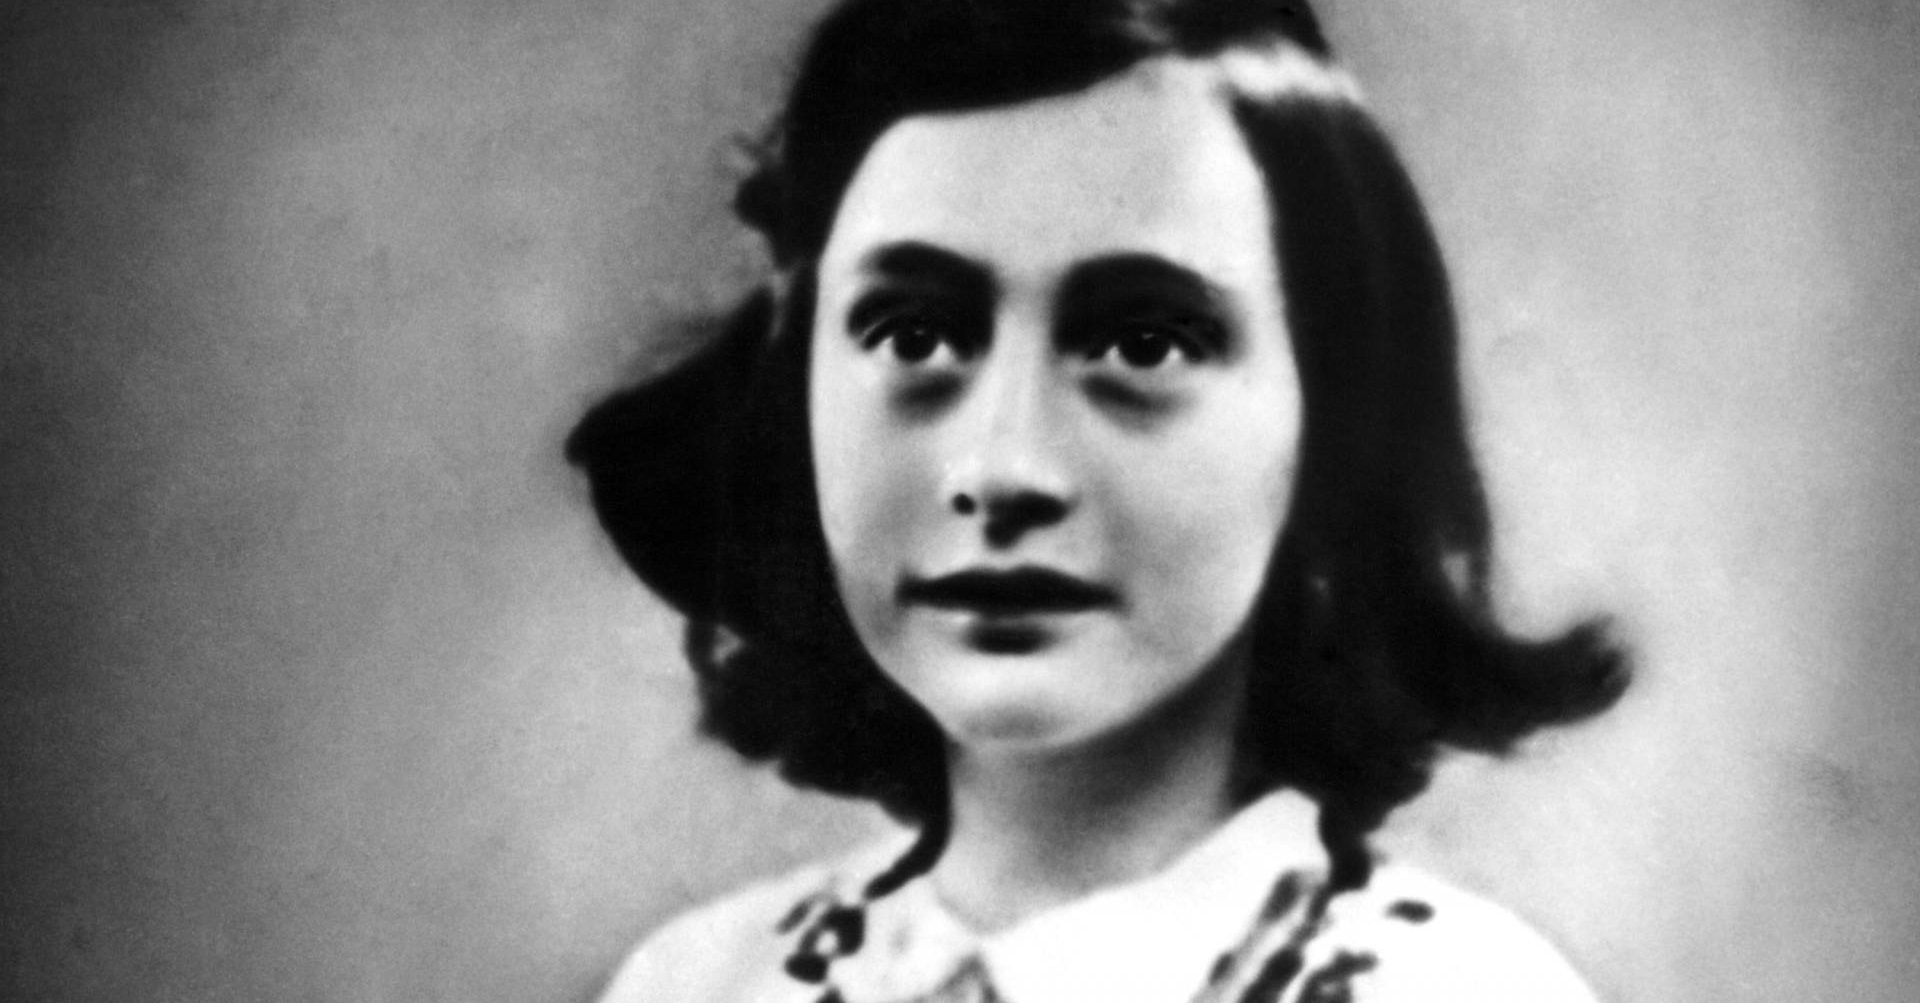 Je bekijkt nu Het verraad van Anne Frank